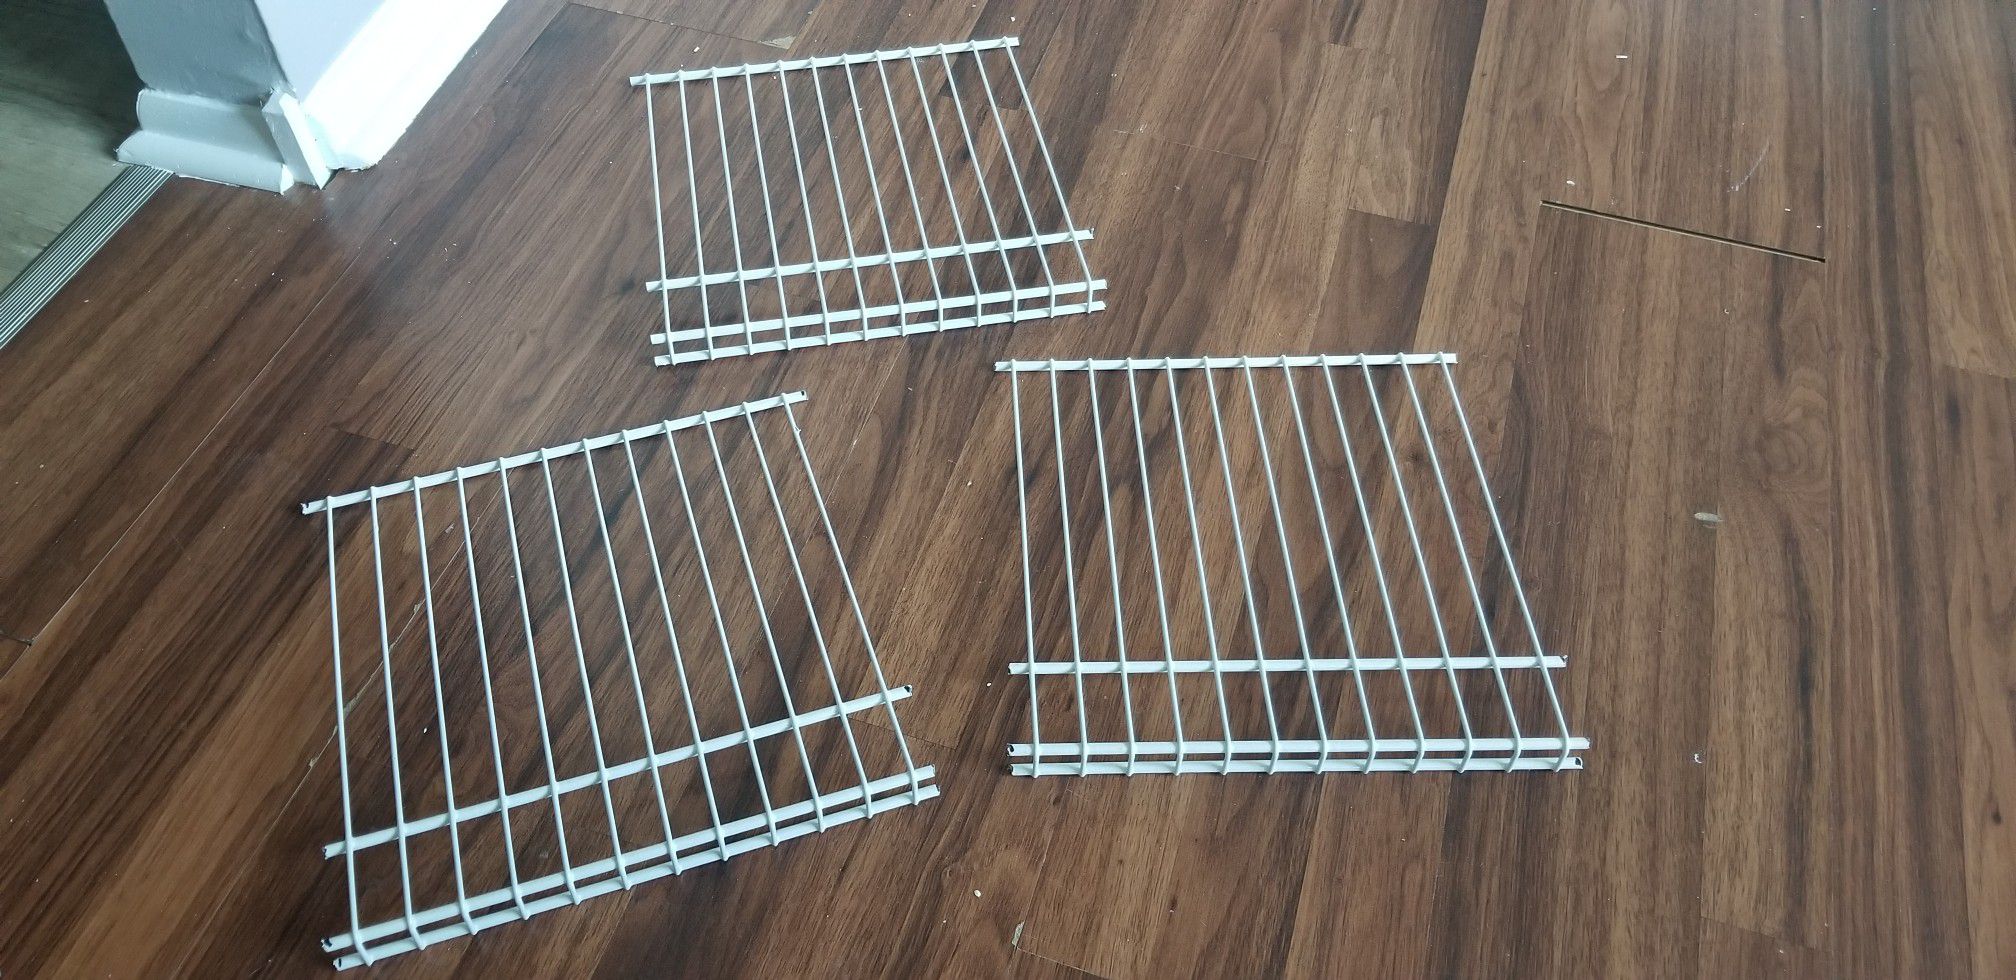 3 metal shelves, metal racks 12x12in